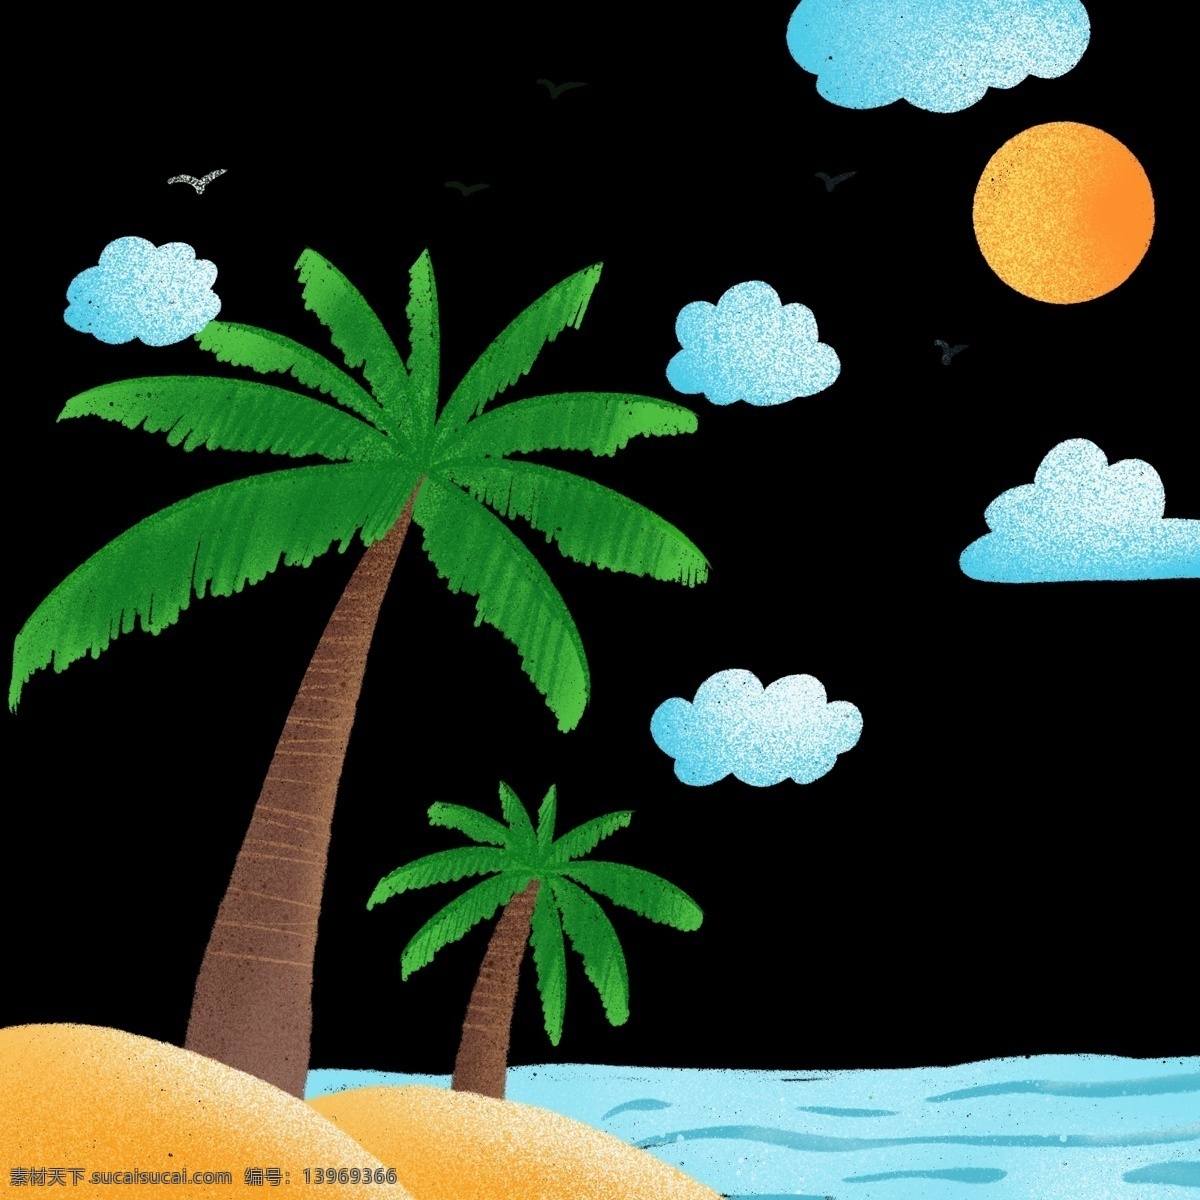 夏日 海滩 风光 免 抠 图 夏日海滩风光 椰子树 海边